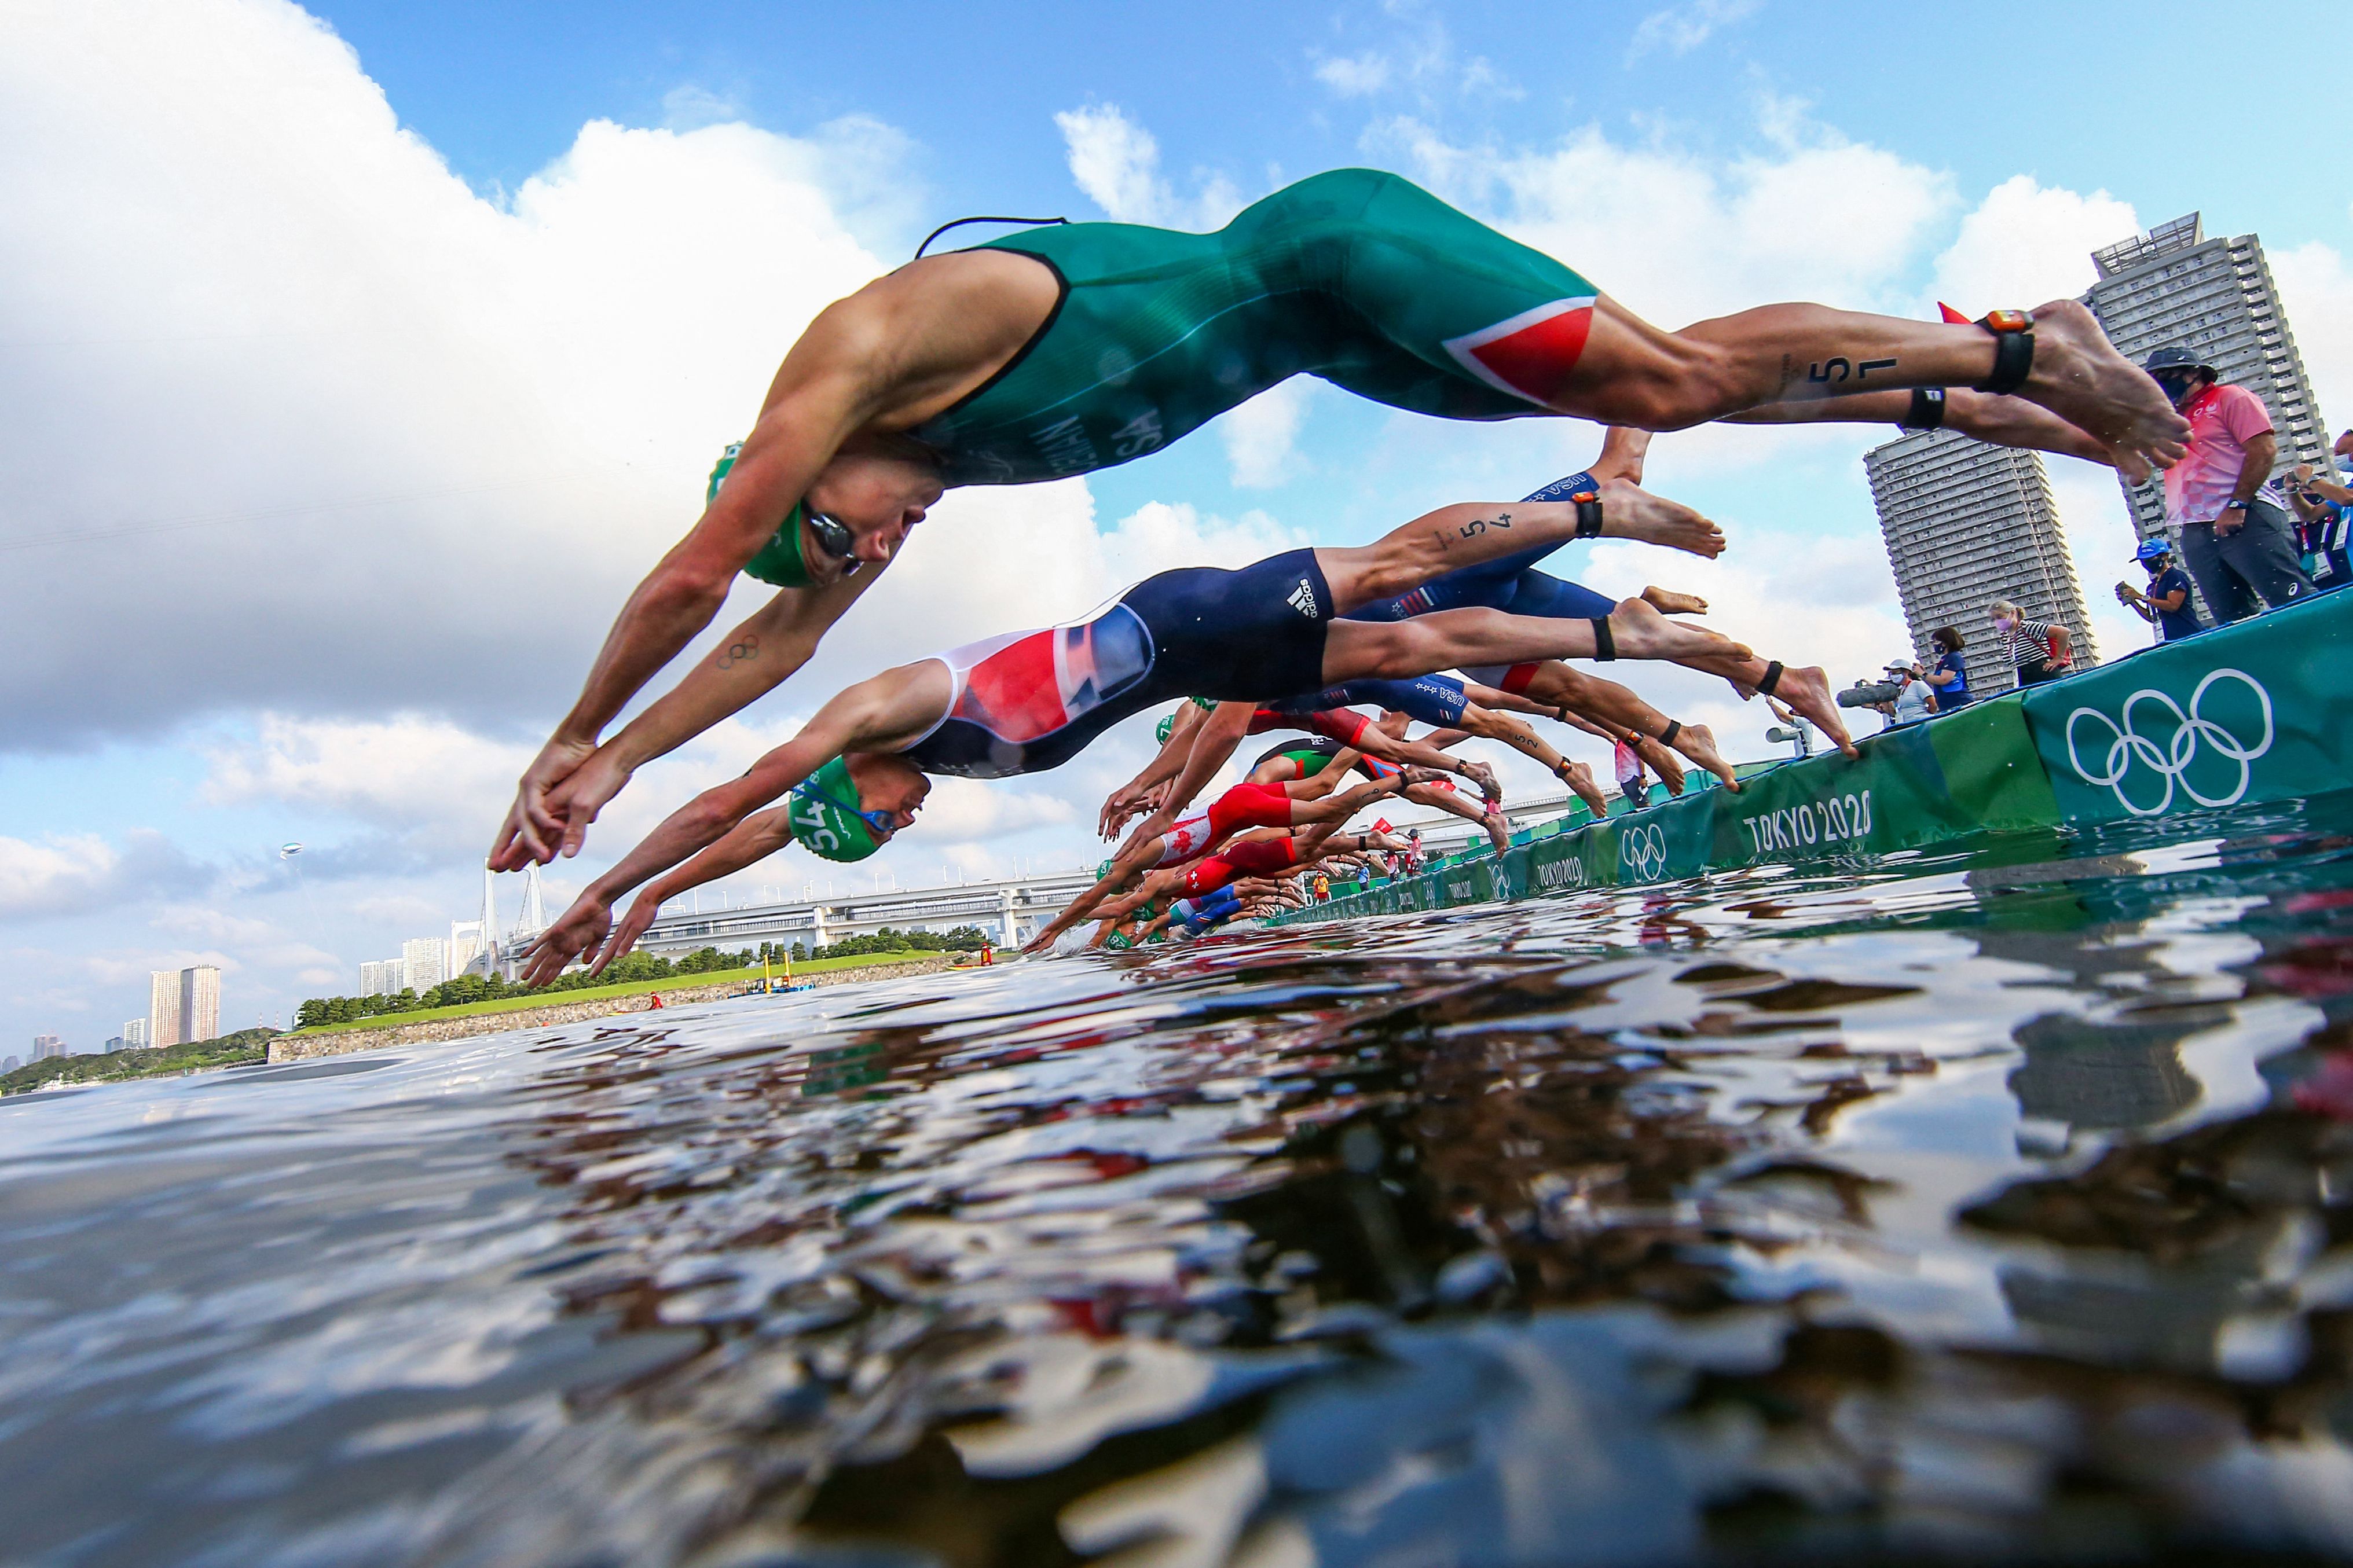 수질 논란이 빚어진 일본 오다이바 해변에서 진행된 트라이애슬론 수영 경기.